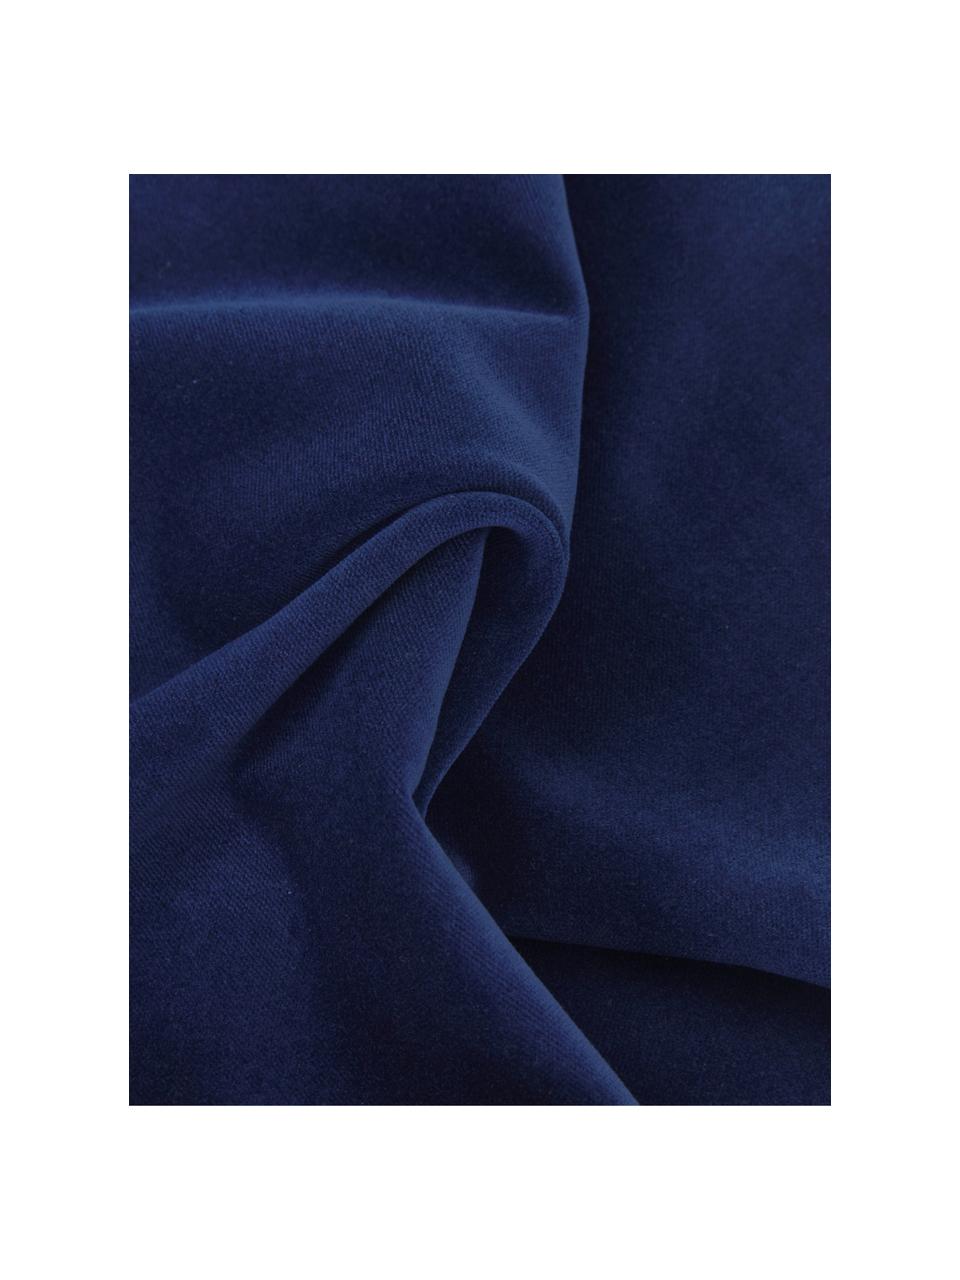 Housse de coussin rectangulaire velours bleu marine Dana, 100 % velours de coton, Bleu marine, larg. 30 x long. 50 cm